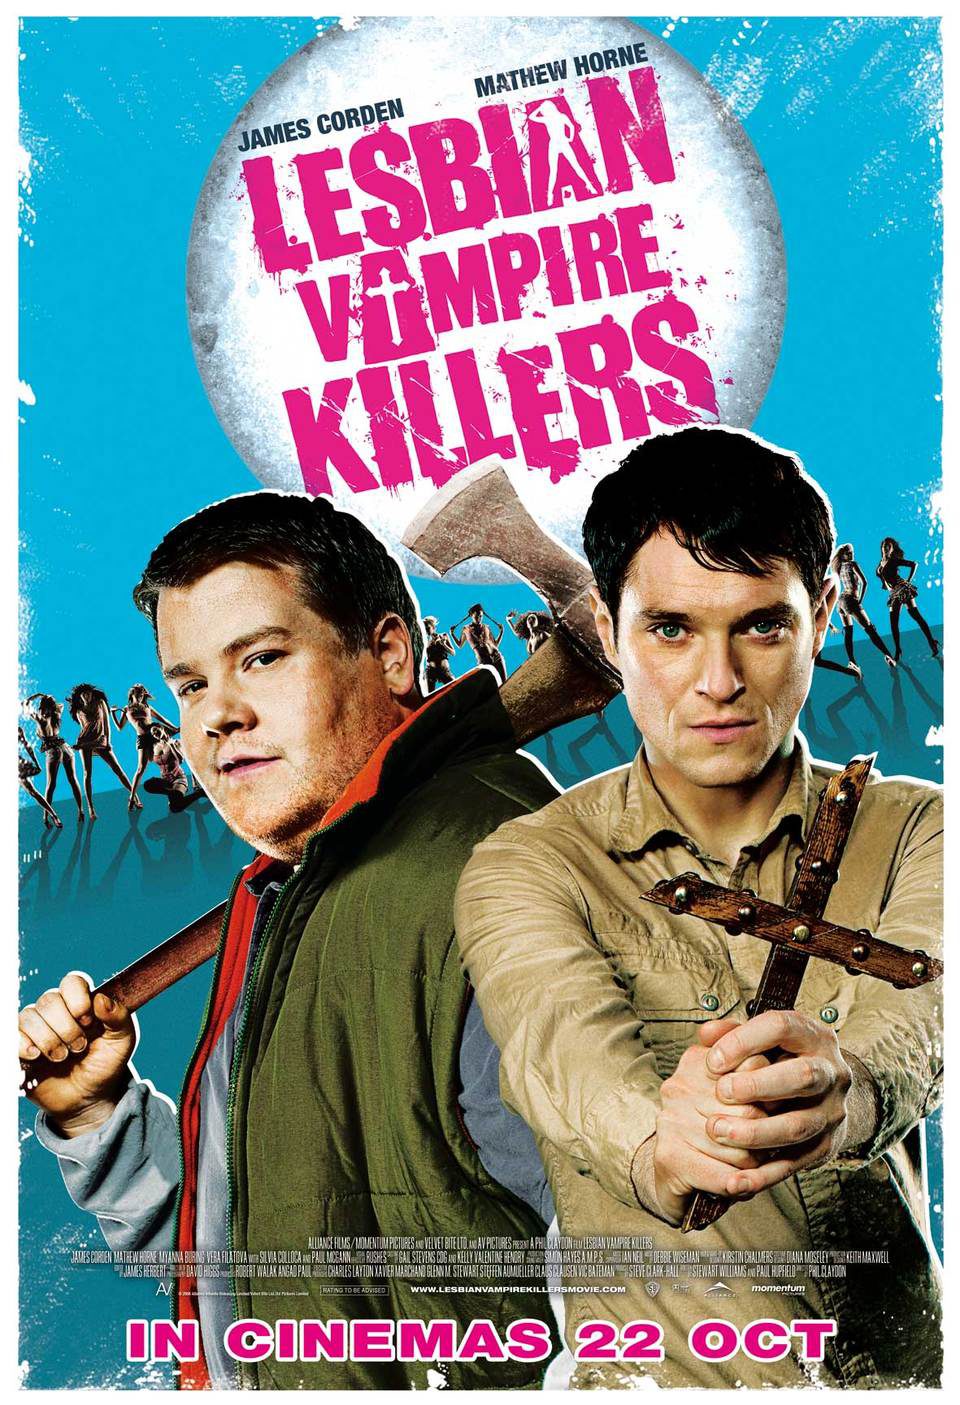 Cartel de Lesbian Vampire Killers - Estados Unidos